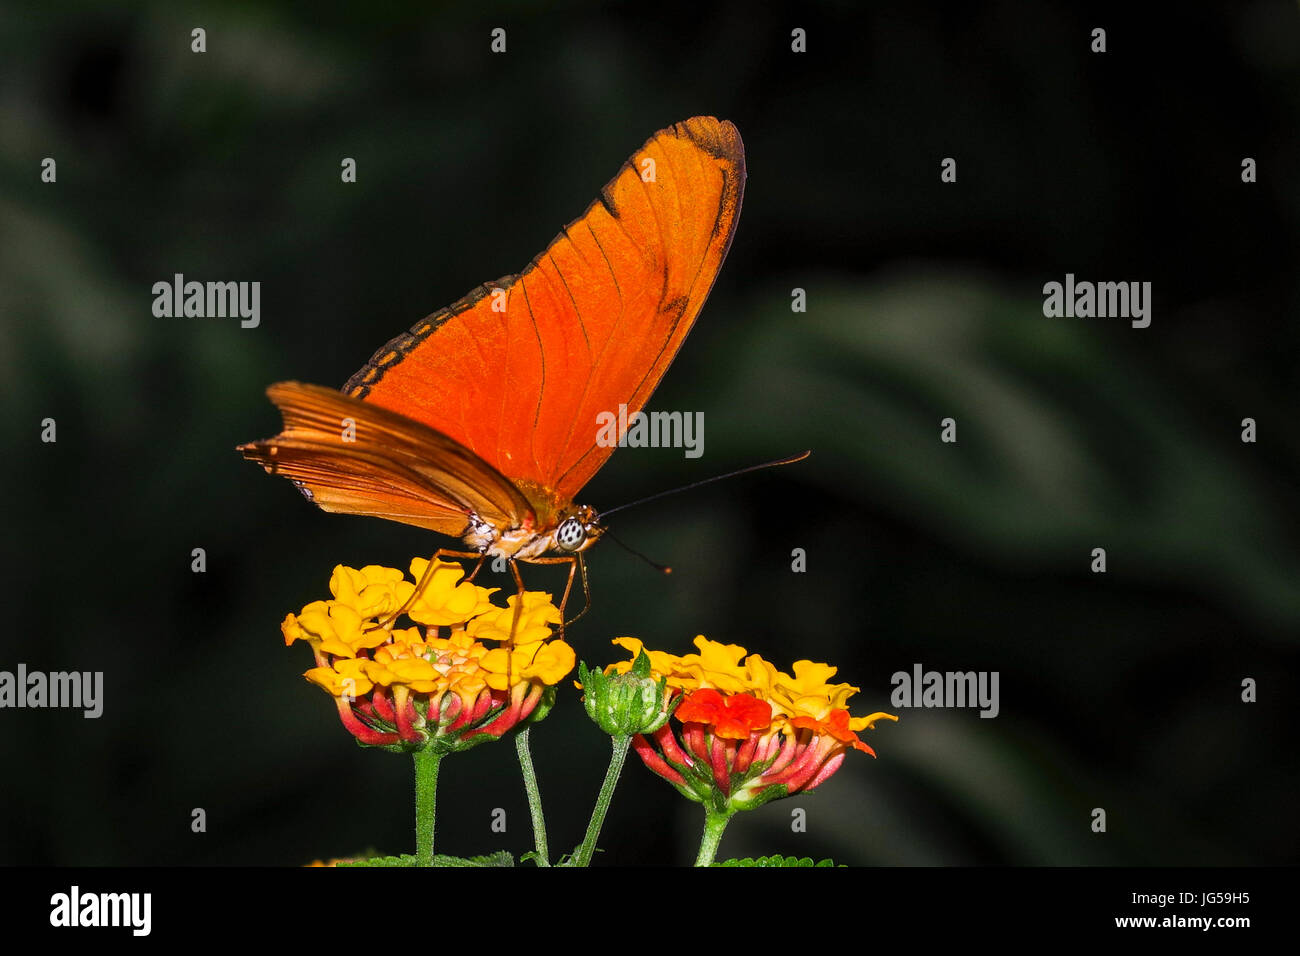 Le Dryas iulia - Orange Julia Butterfly on flower image prise au Panama Banque D'Images